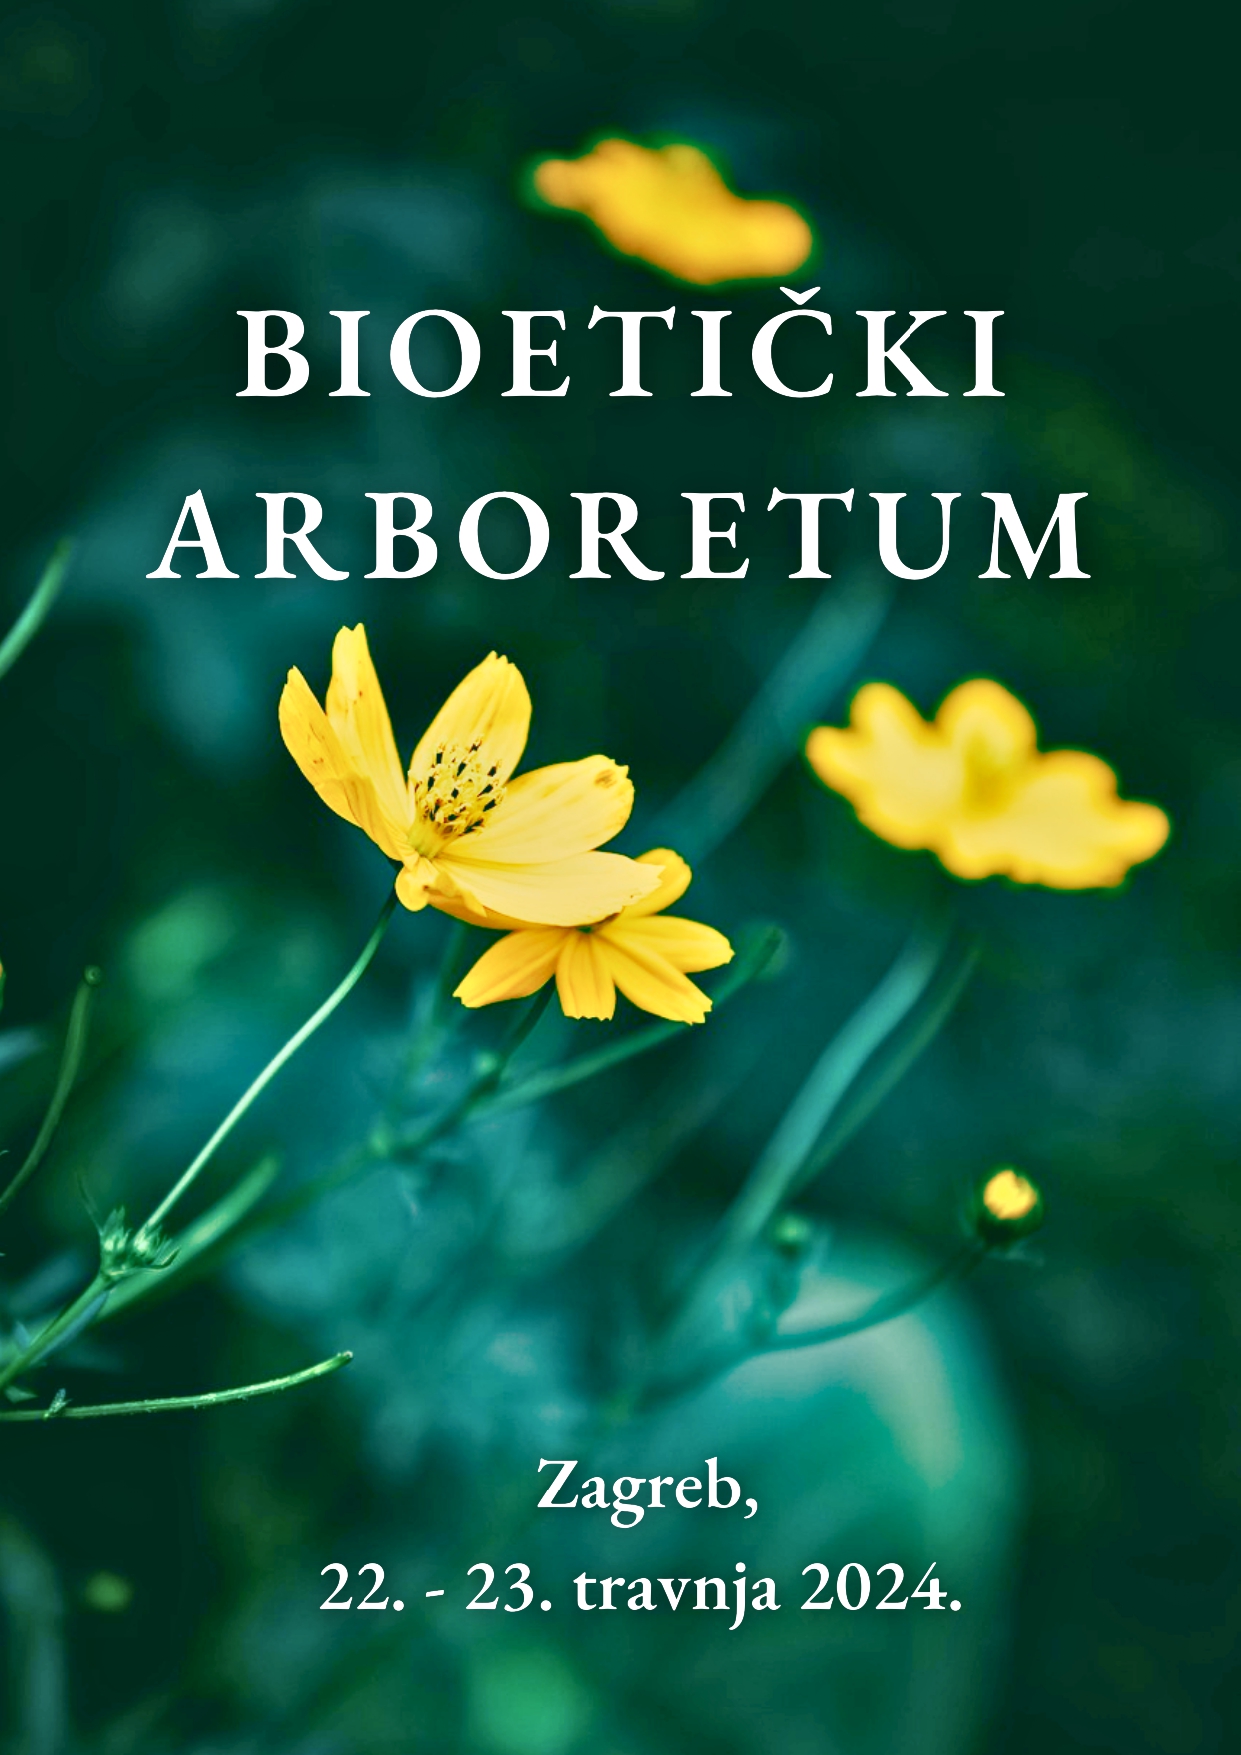 Bioetički arboretum (22. – 23. travnja 2024.)